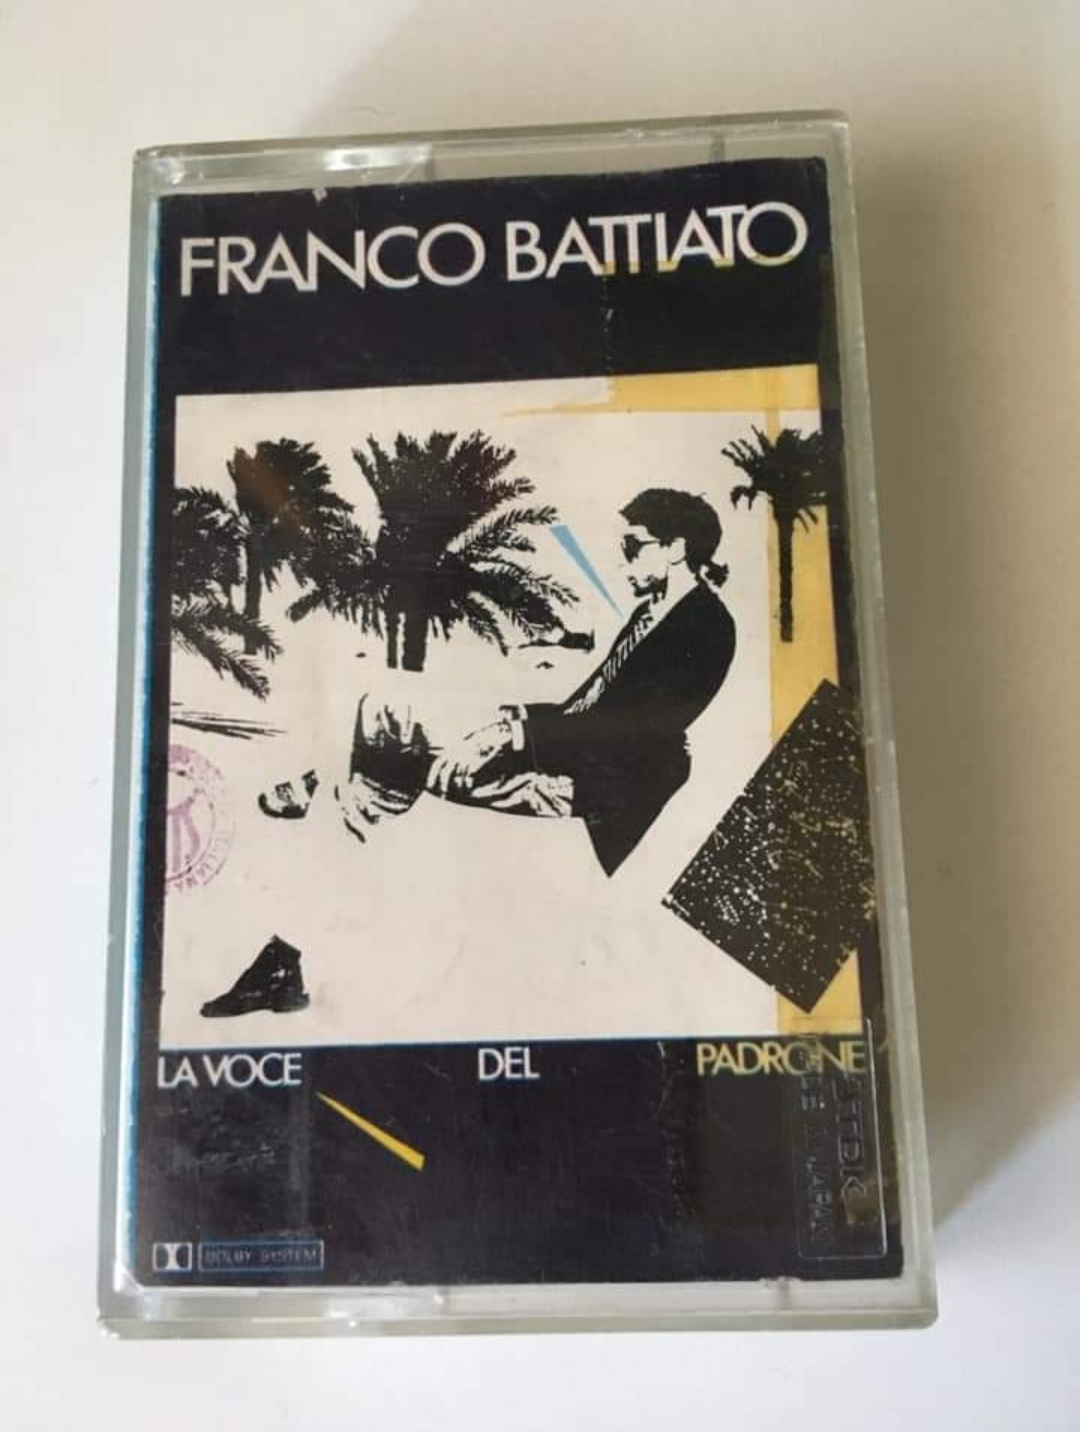 La poetessa (dopo l’estate arriva il suo nuovo libro) scrittrice Cristina Cappellini ricorda il Maestro Franco Battiato via social